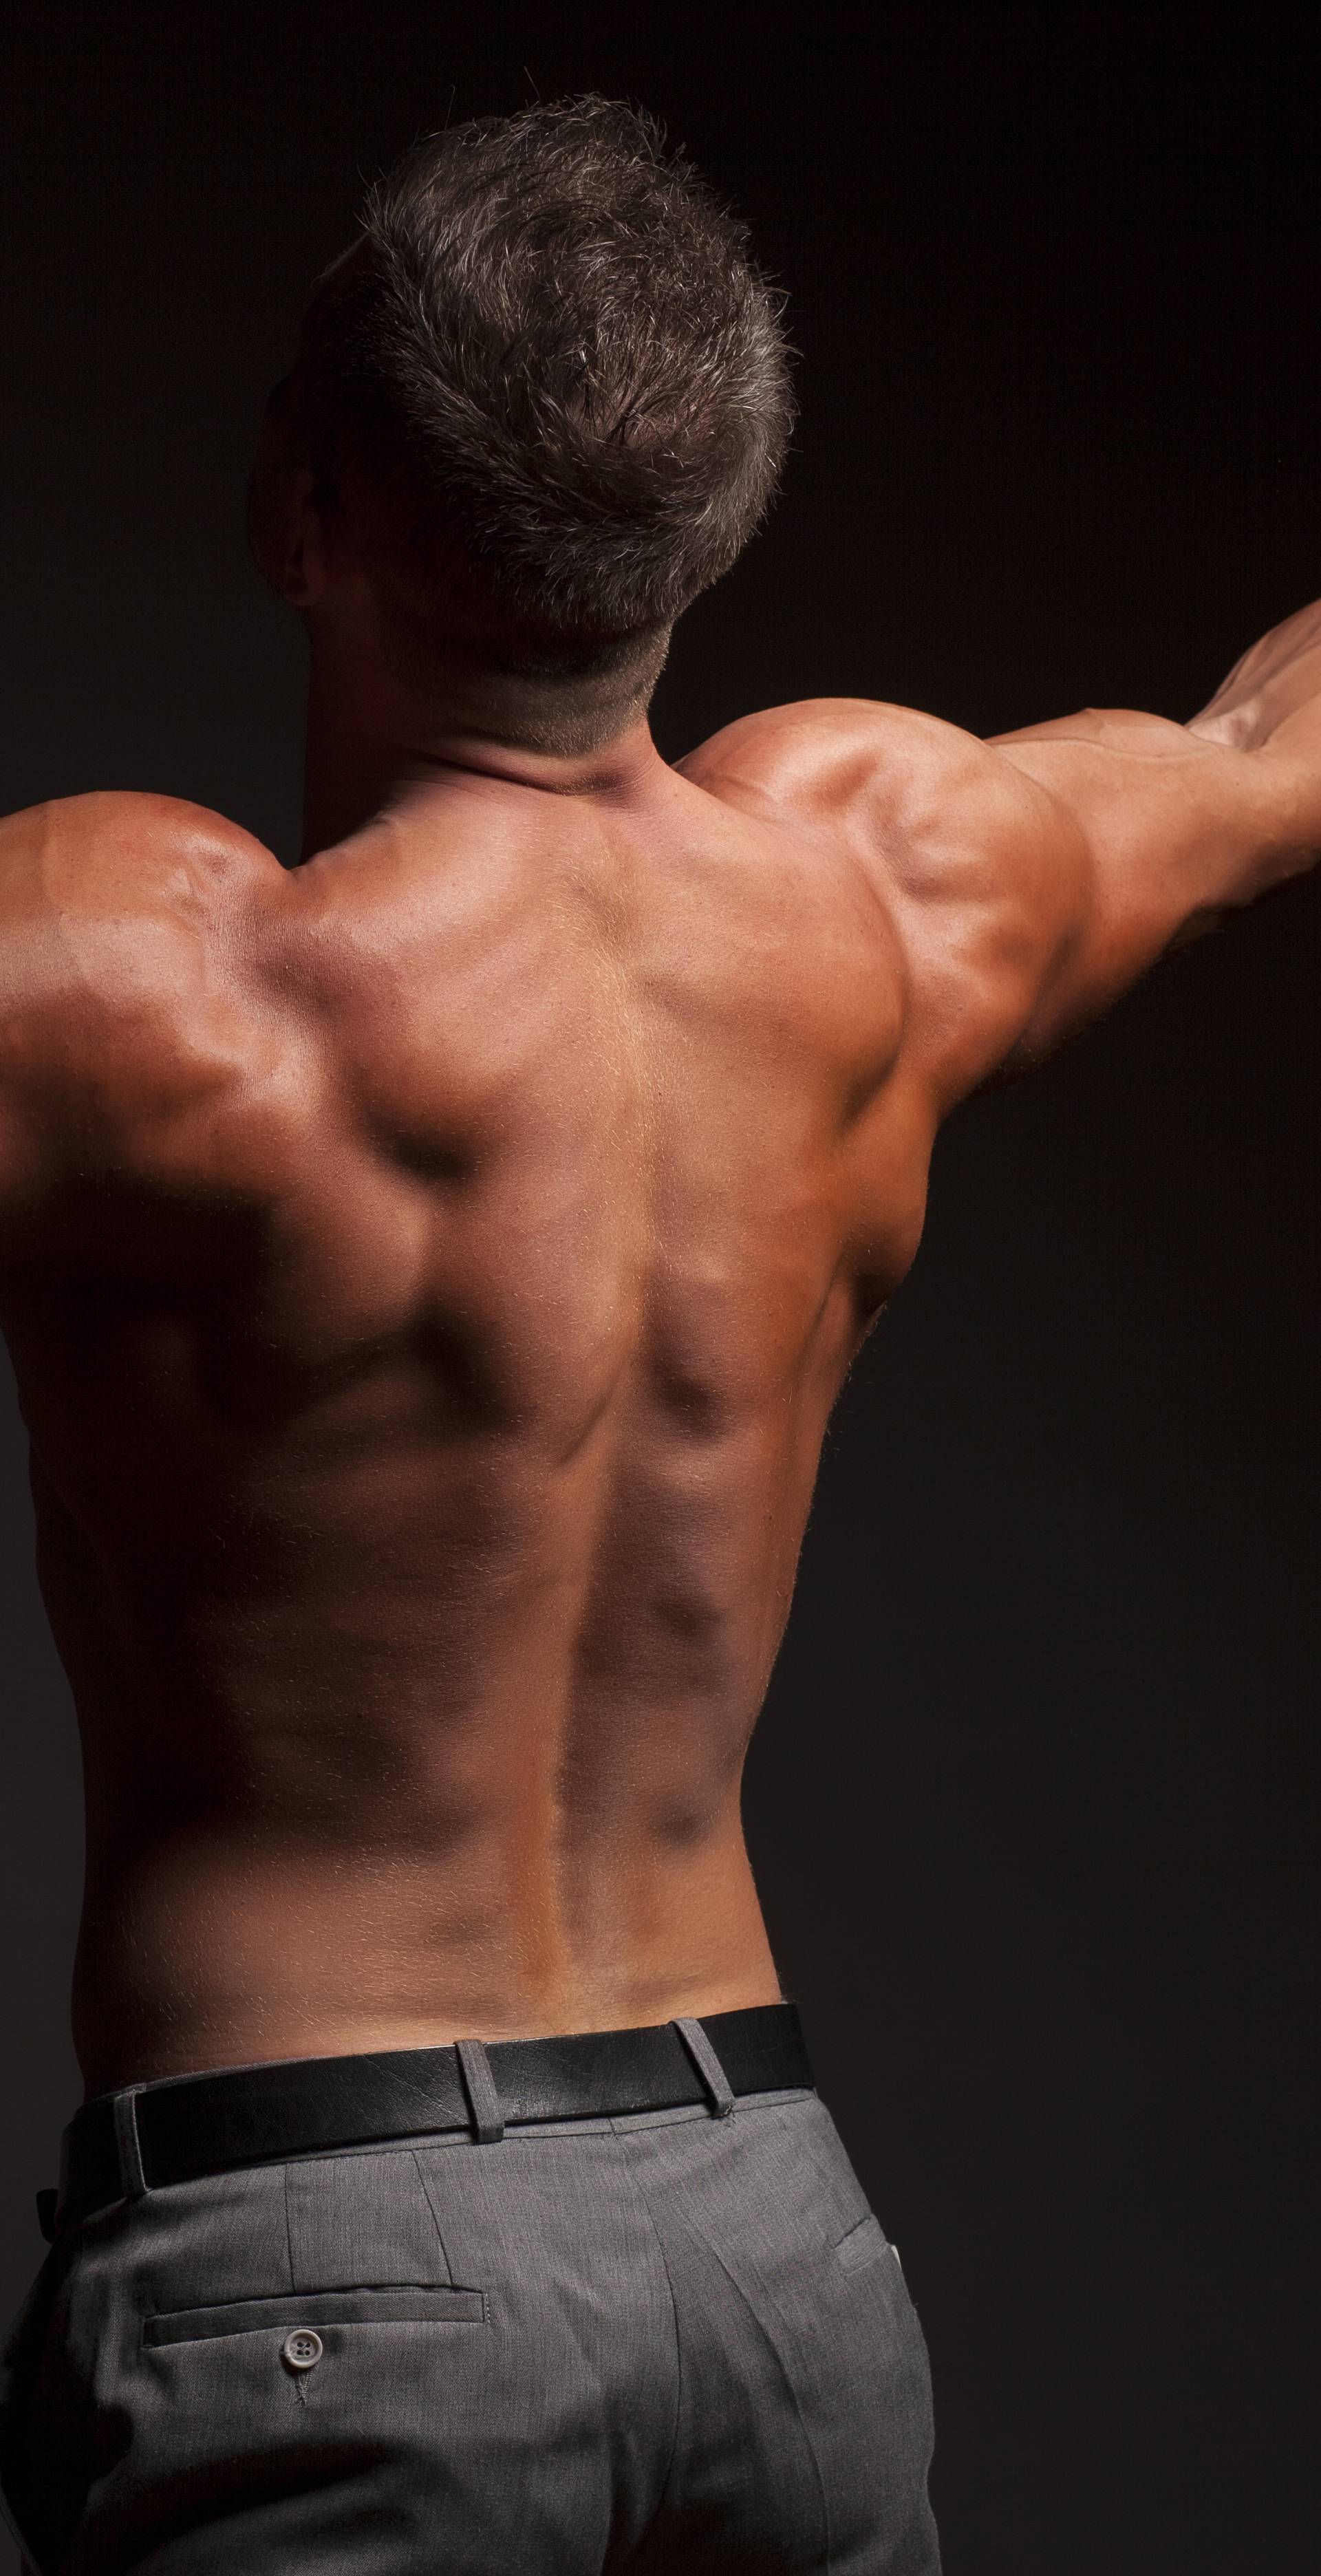 Brza metoda za dobivanje 10 kg novih mišića u mjesec dana